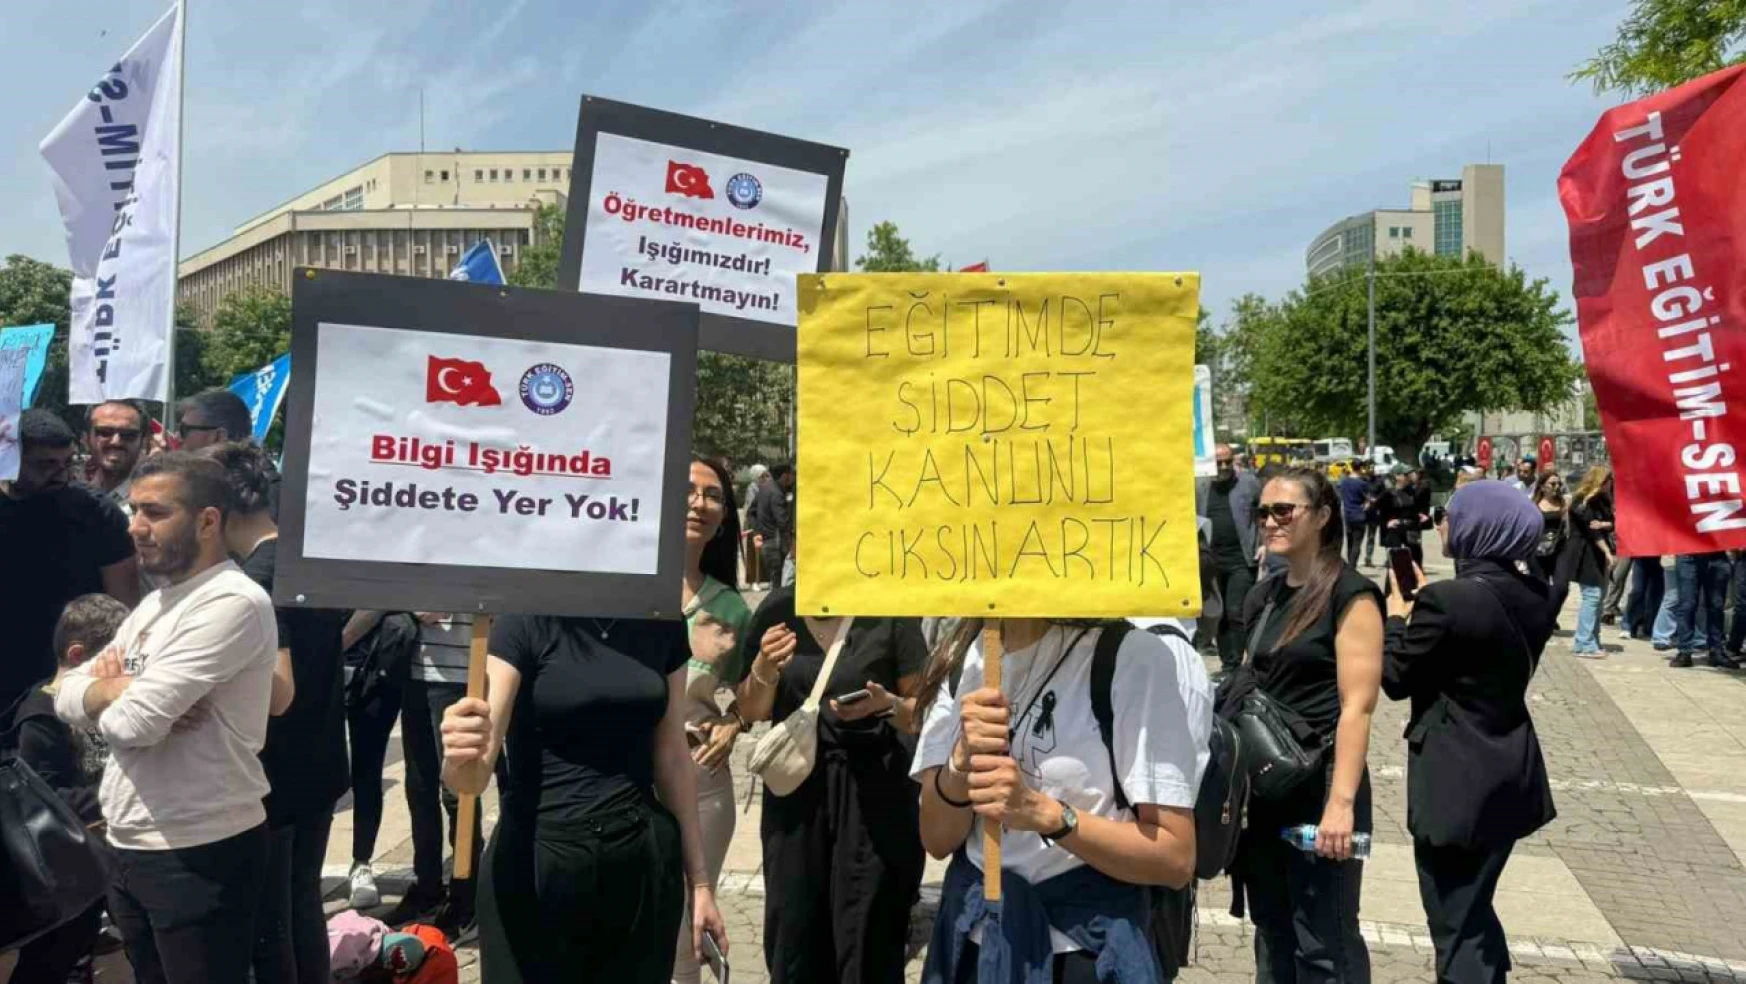 Gaziantep'te şiddete karşı öğretmenler basın açıklaması yaptı